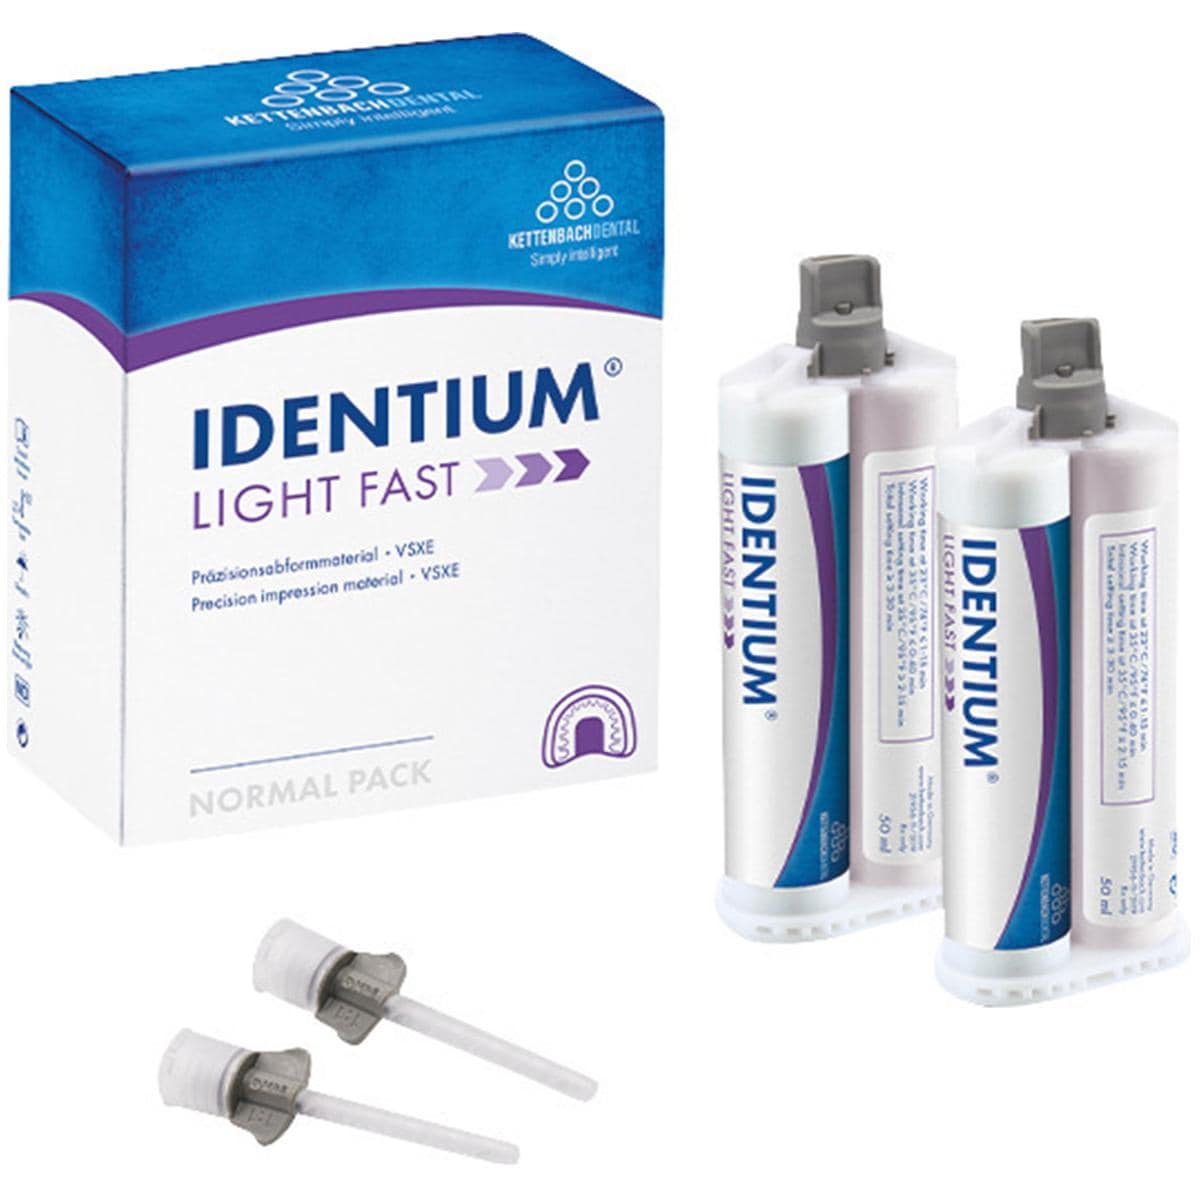 Identium Light cartridge - Fast